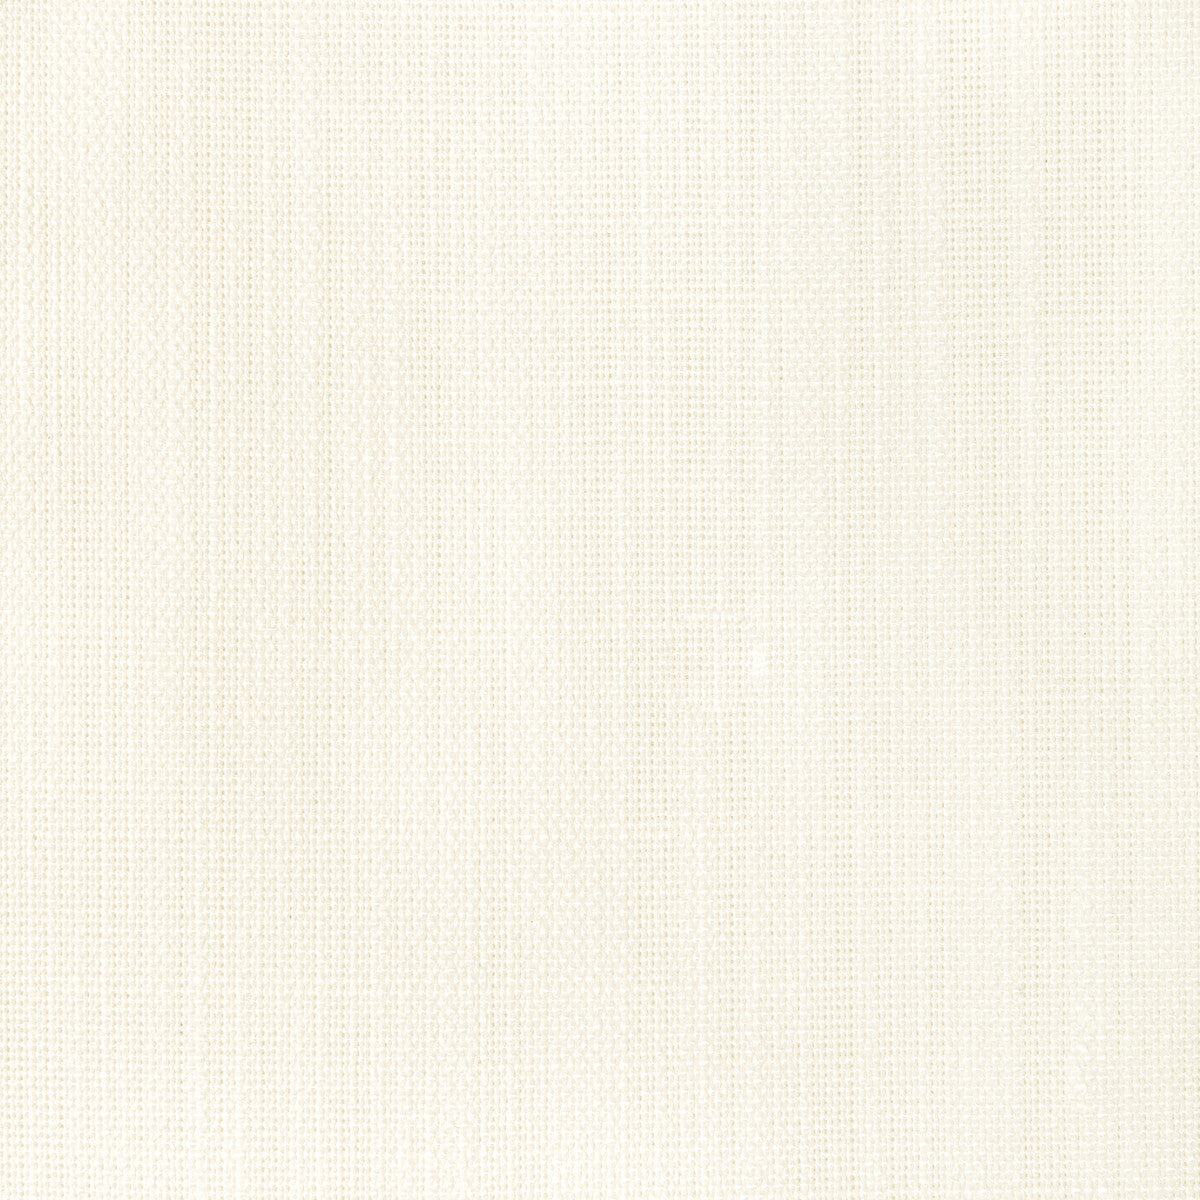 Kravet Basics fabric in 35997-1 color - pattern 35997.1.0 - by Kravet Basics